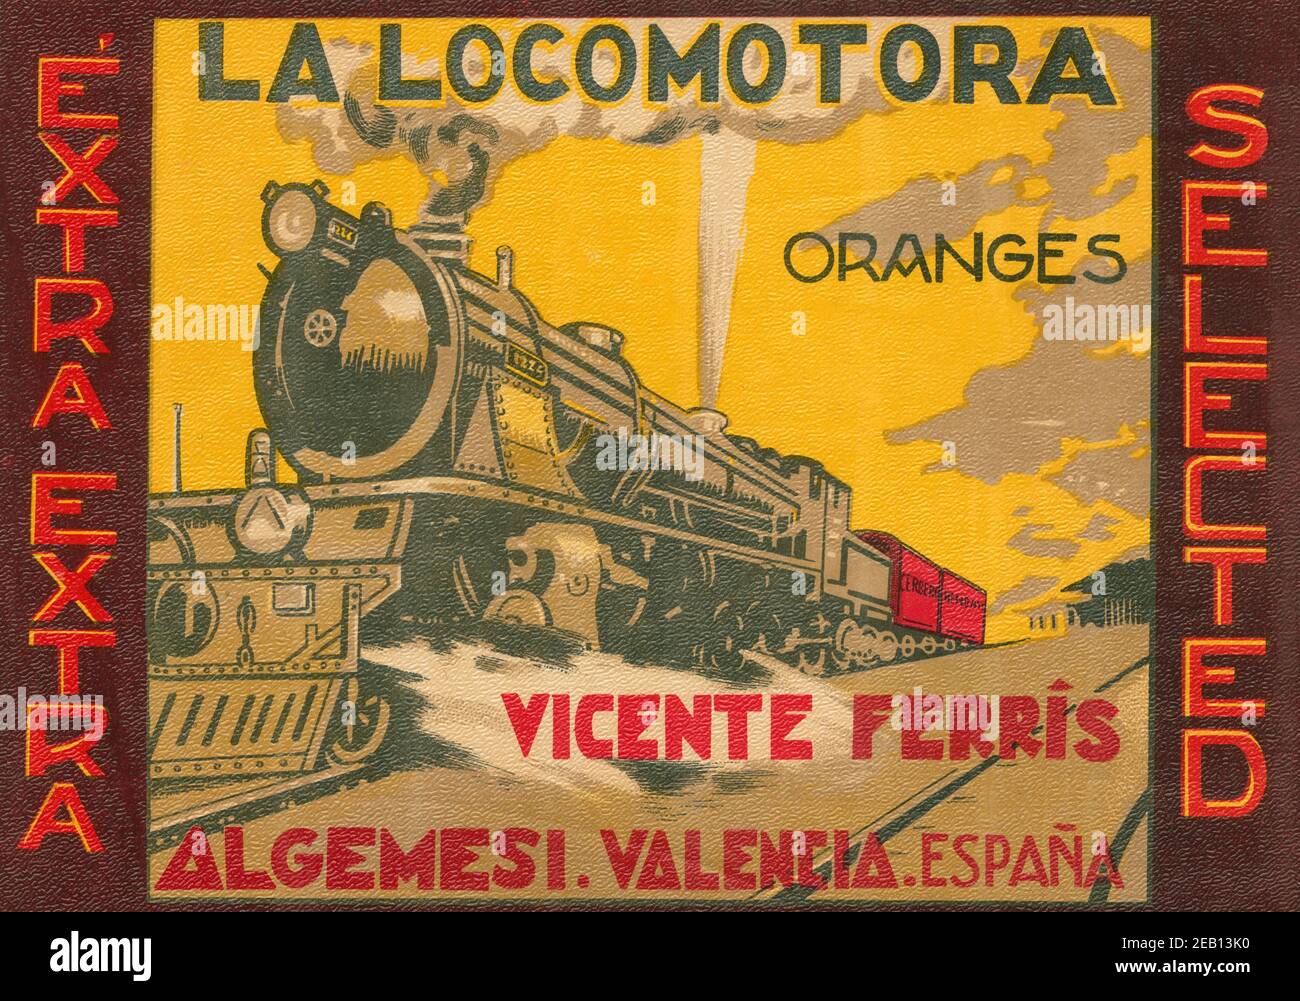 La Locomotora Oranges Stock Photo